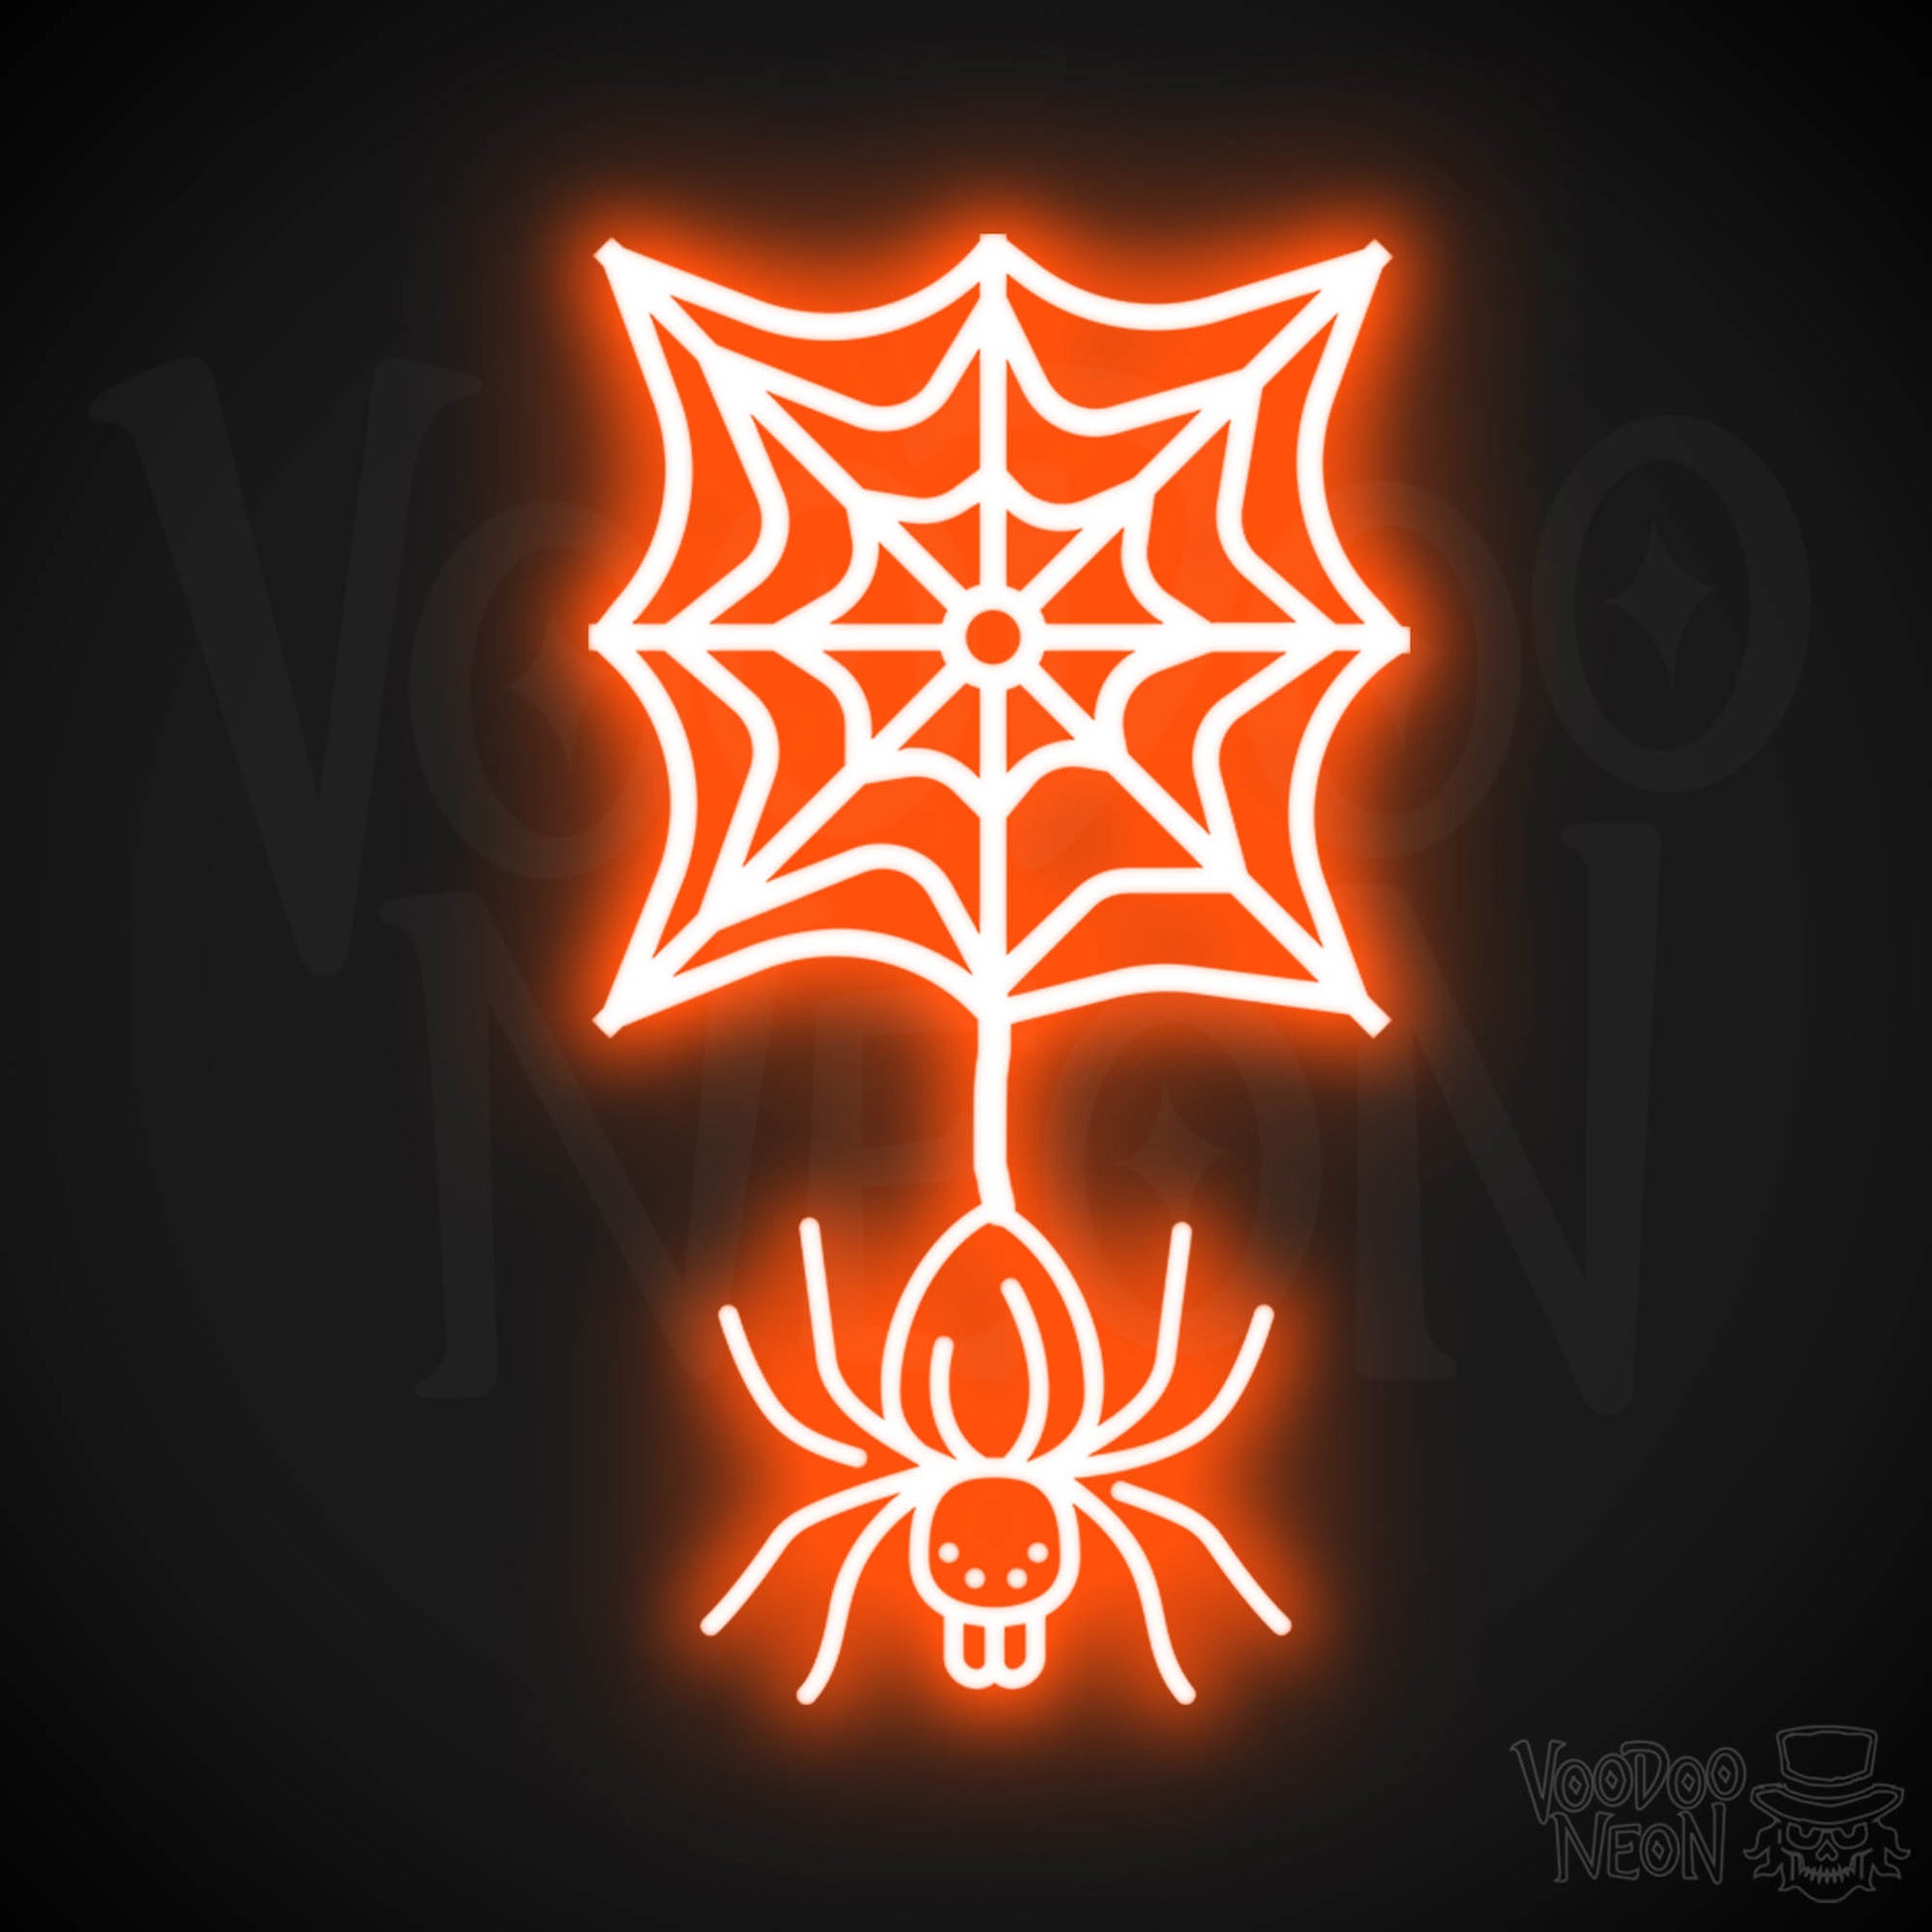 Neon Spider - Spider Neon Sign - Halloween LED Neon Spider - Color Orange